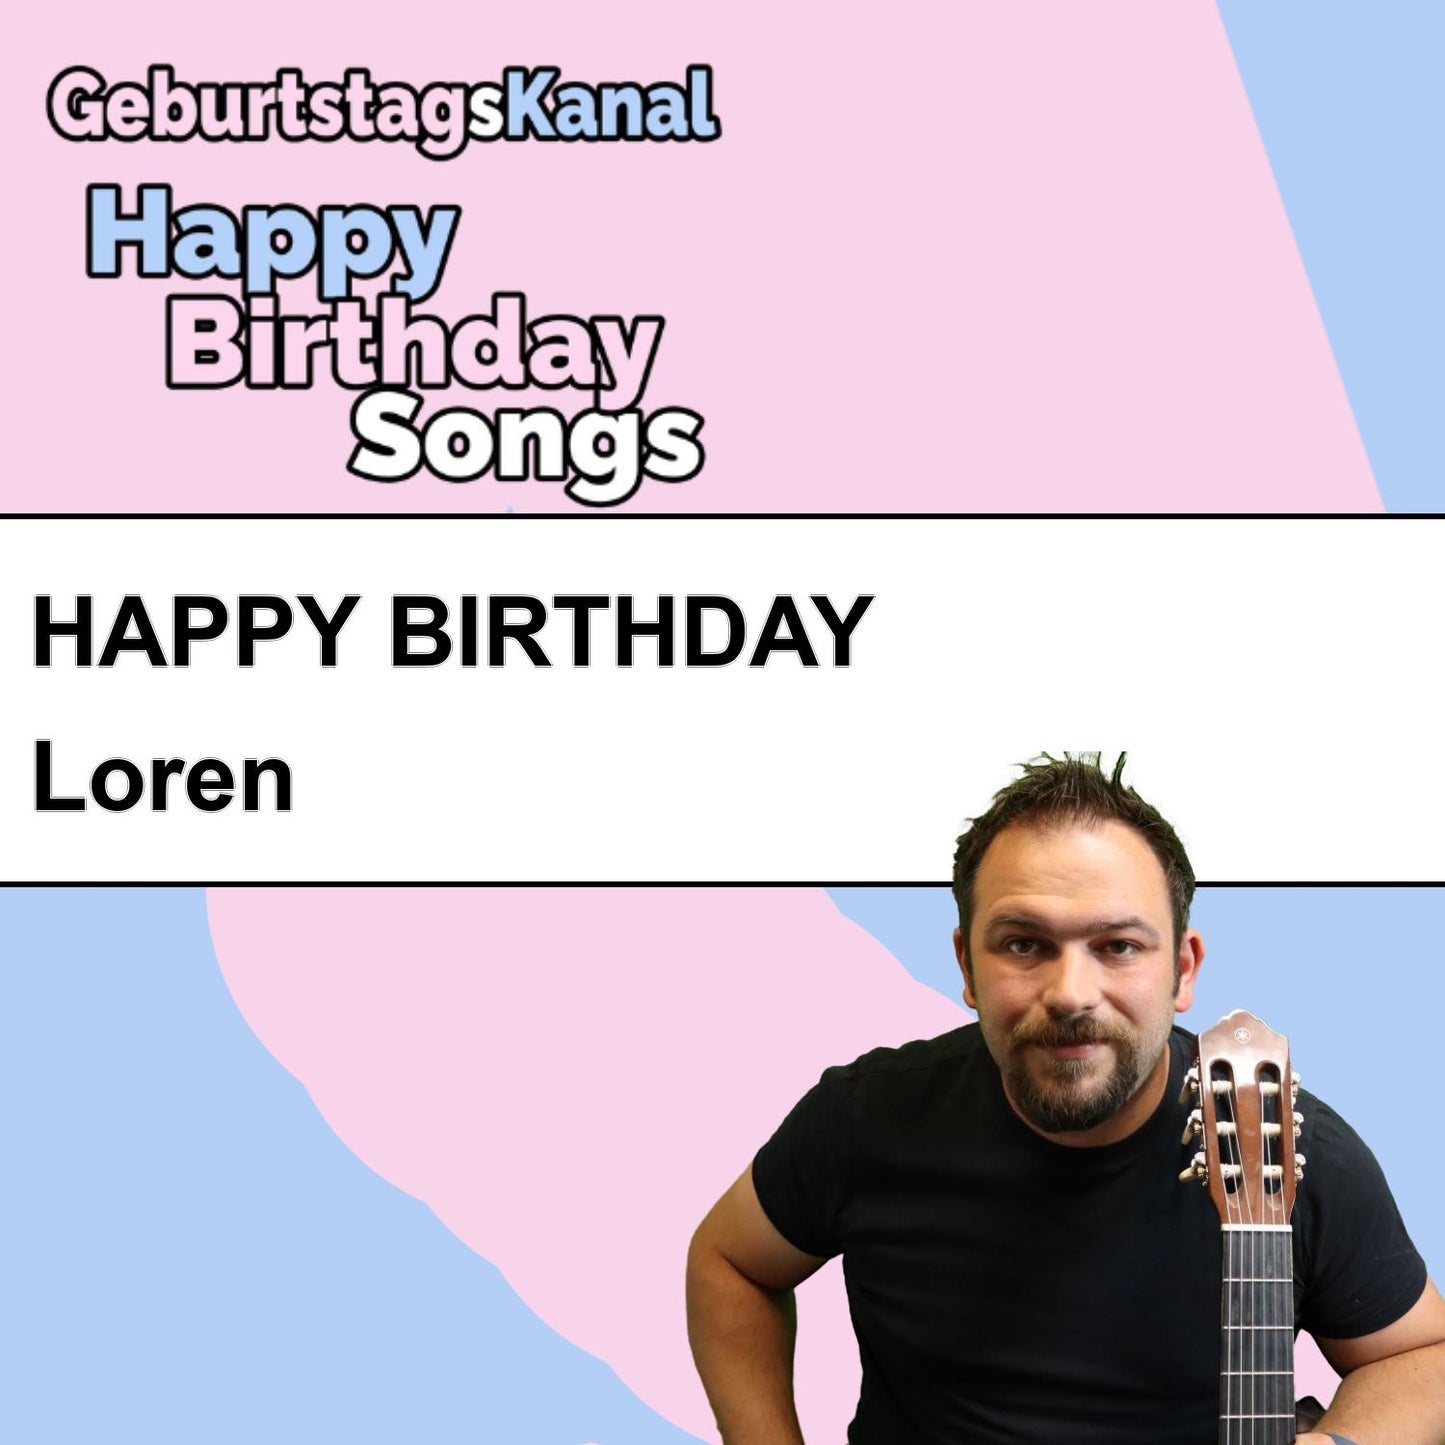 Produktbild Happy Birthday to you Loren mit Wunschgrußbotschaft